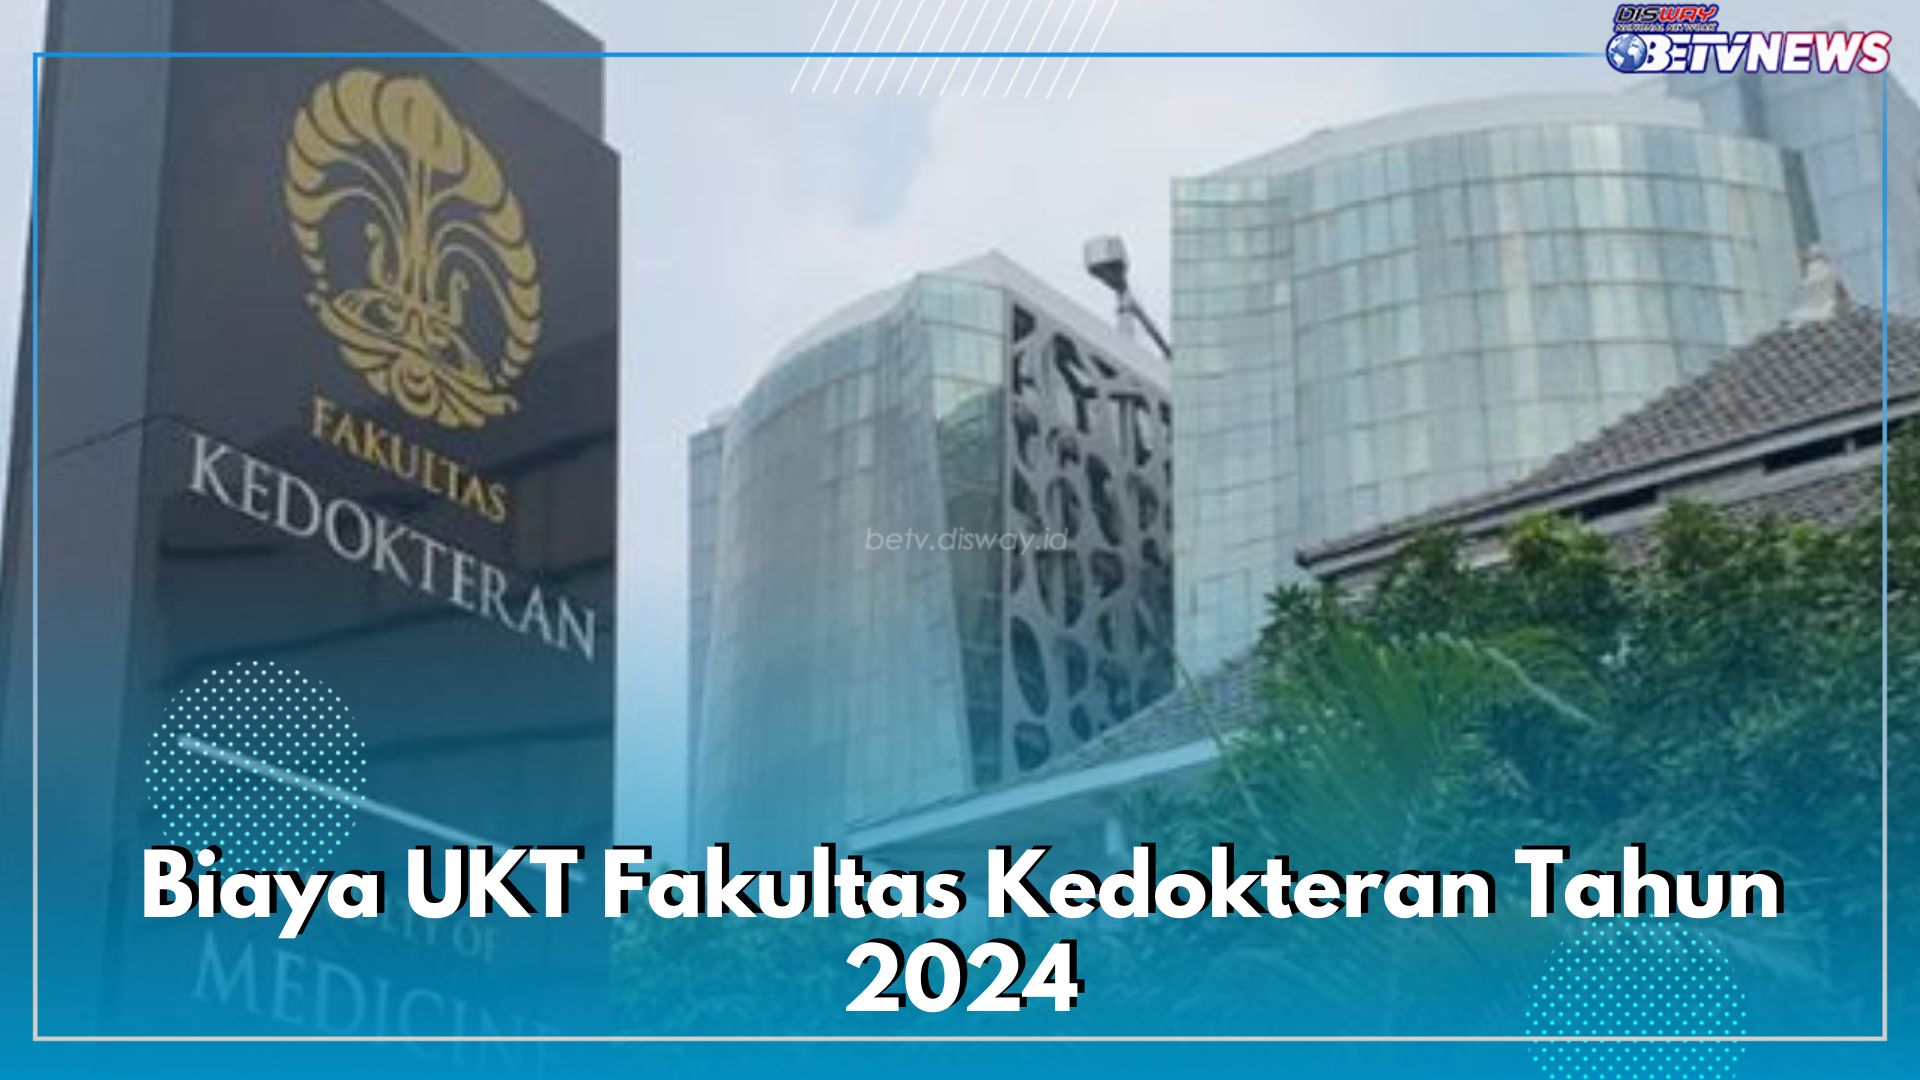 Inilah Biaya UKT Fakultas Kedokteran Tahun 2024 di 4 PTN Terbaik Indonesia, Ada UI hingga UGM